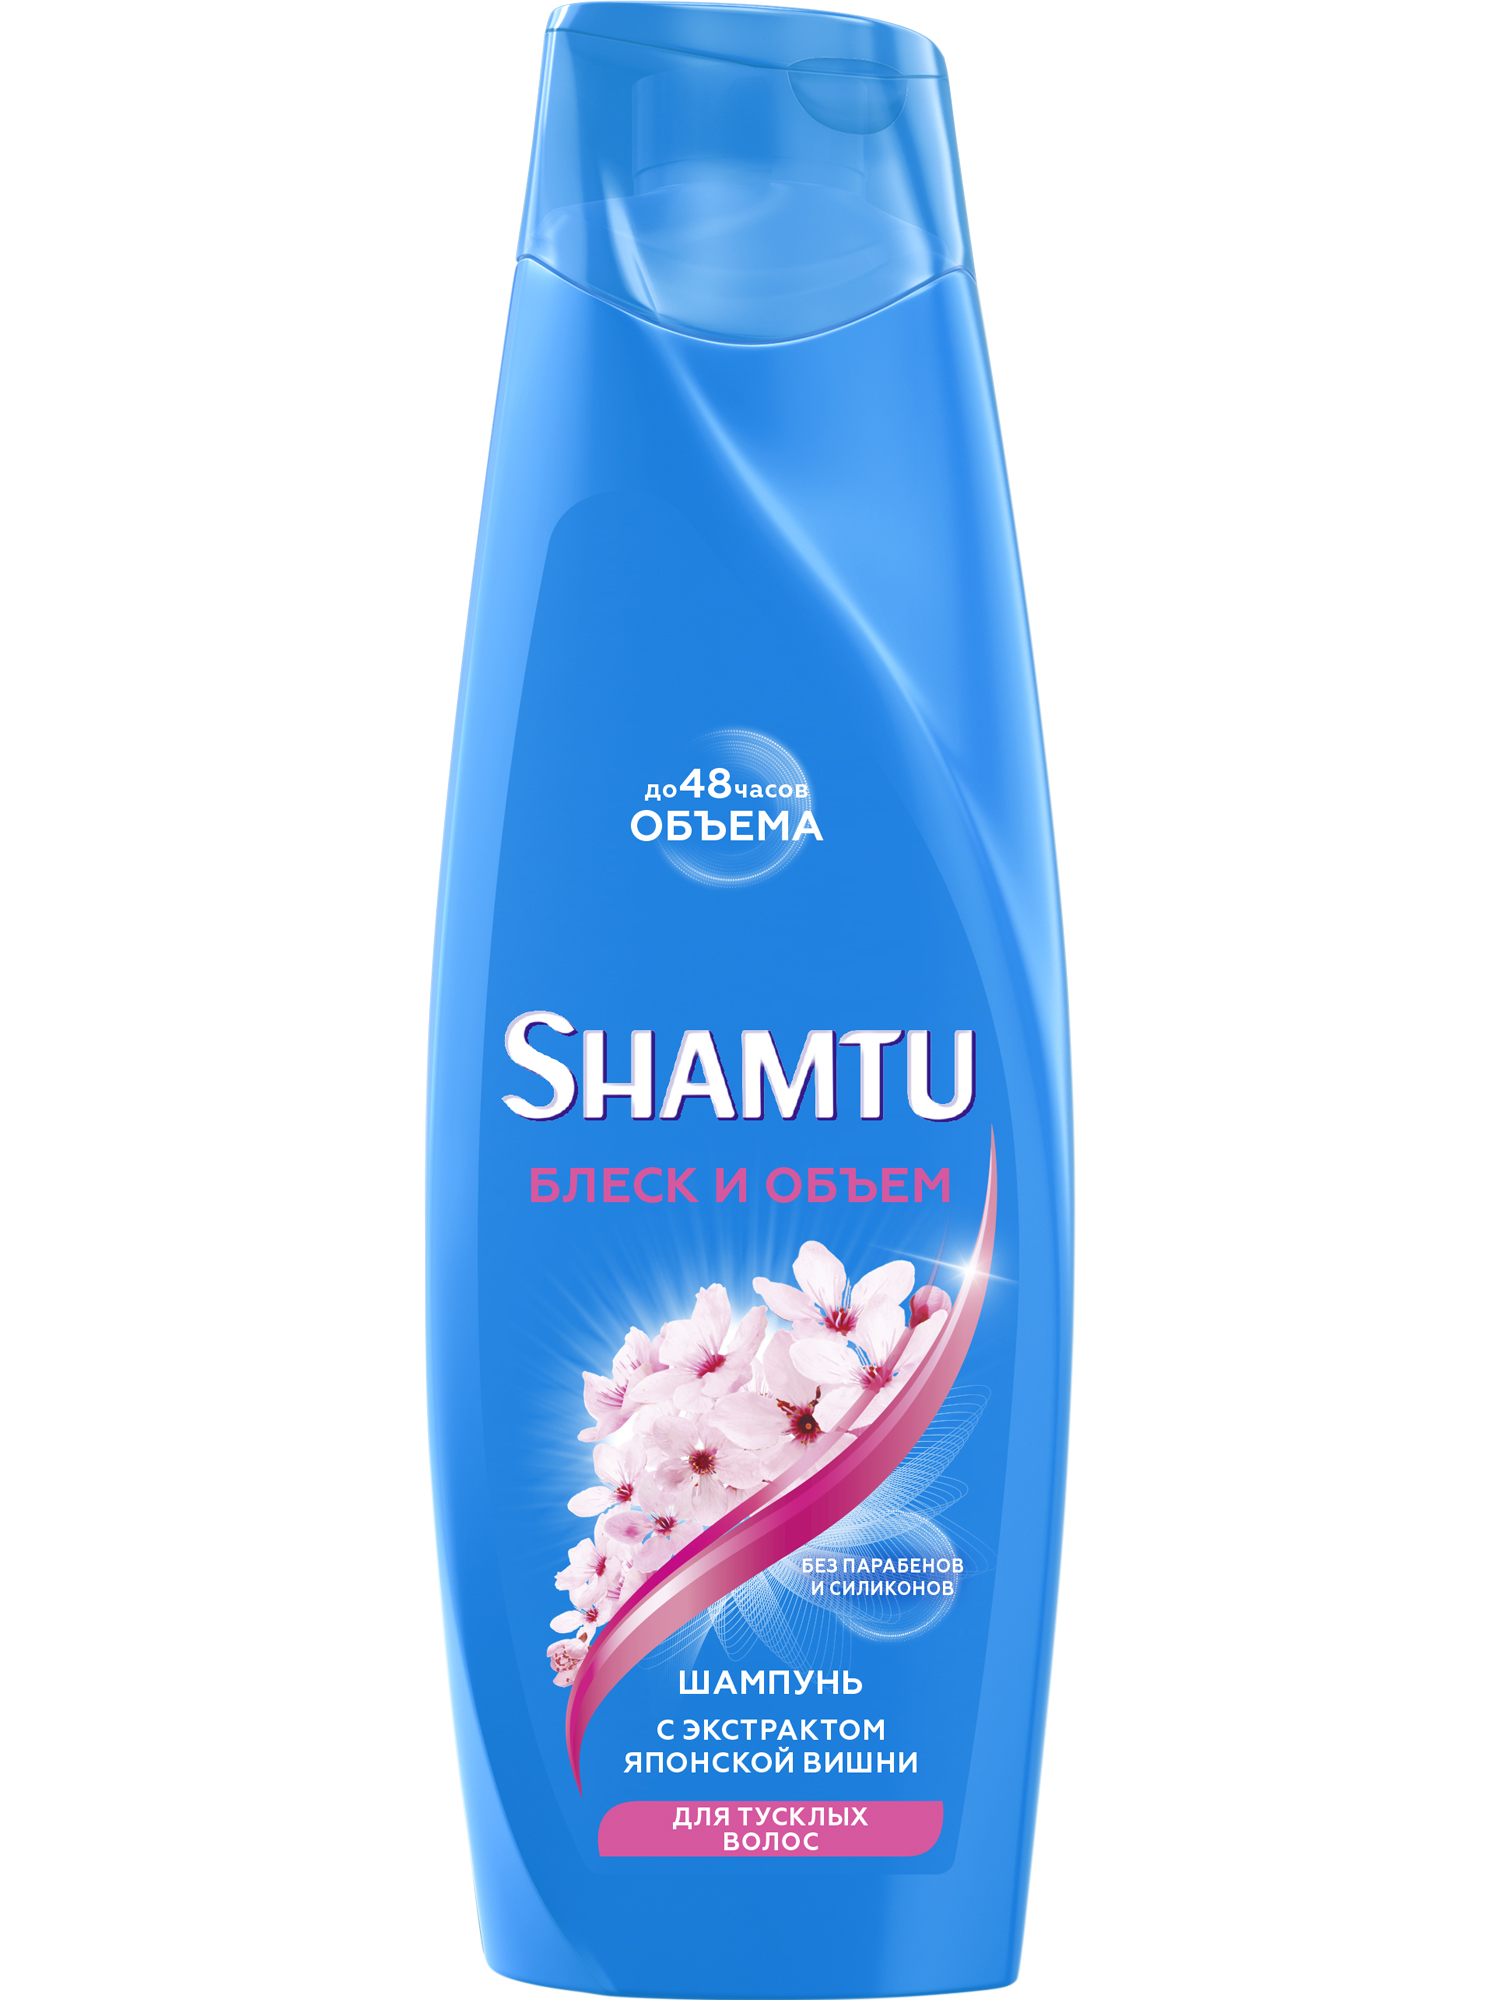 Шампунь Shamtu Блеск и объём, для тусклых волос с Push-up эффектом, 360 мл